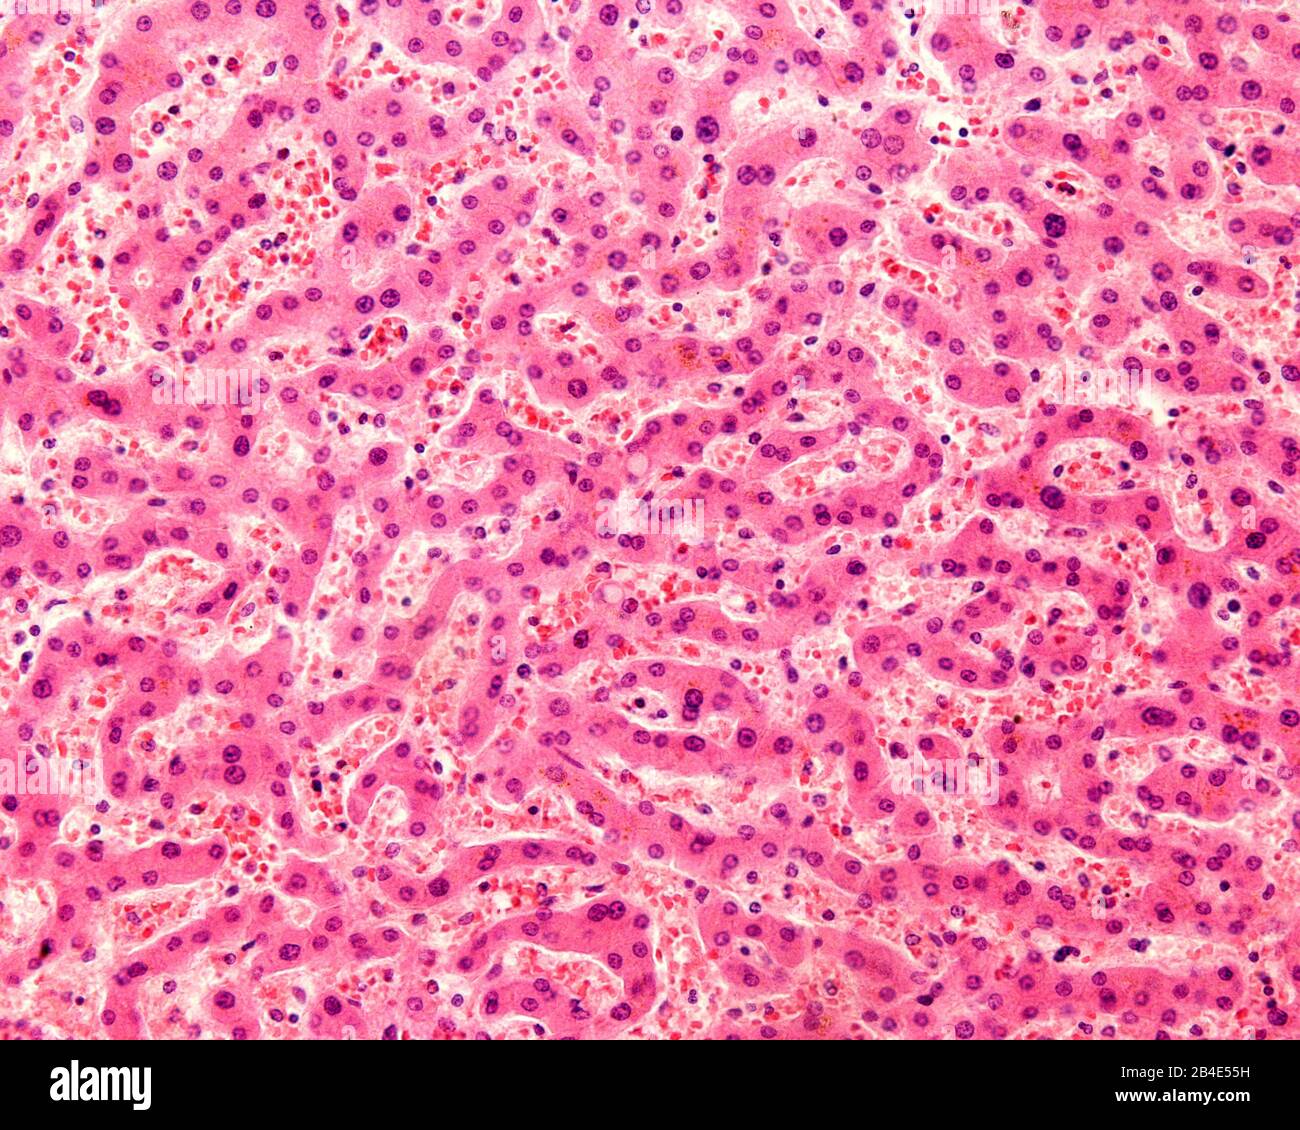 Micrographe léger d'un foie humain taché d'hématoxyline et d'éosine. Les hépatocytes sont disposés en cordons séparés par des zones claires où le péché hépatique est présent Banque D'Images